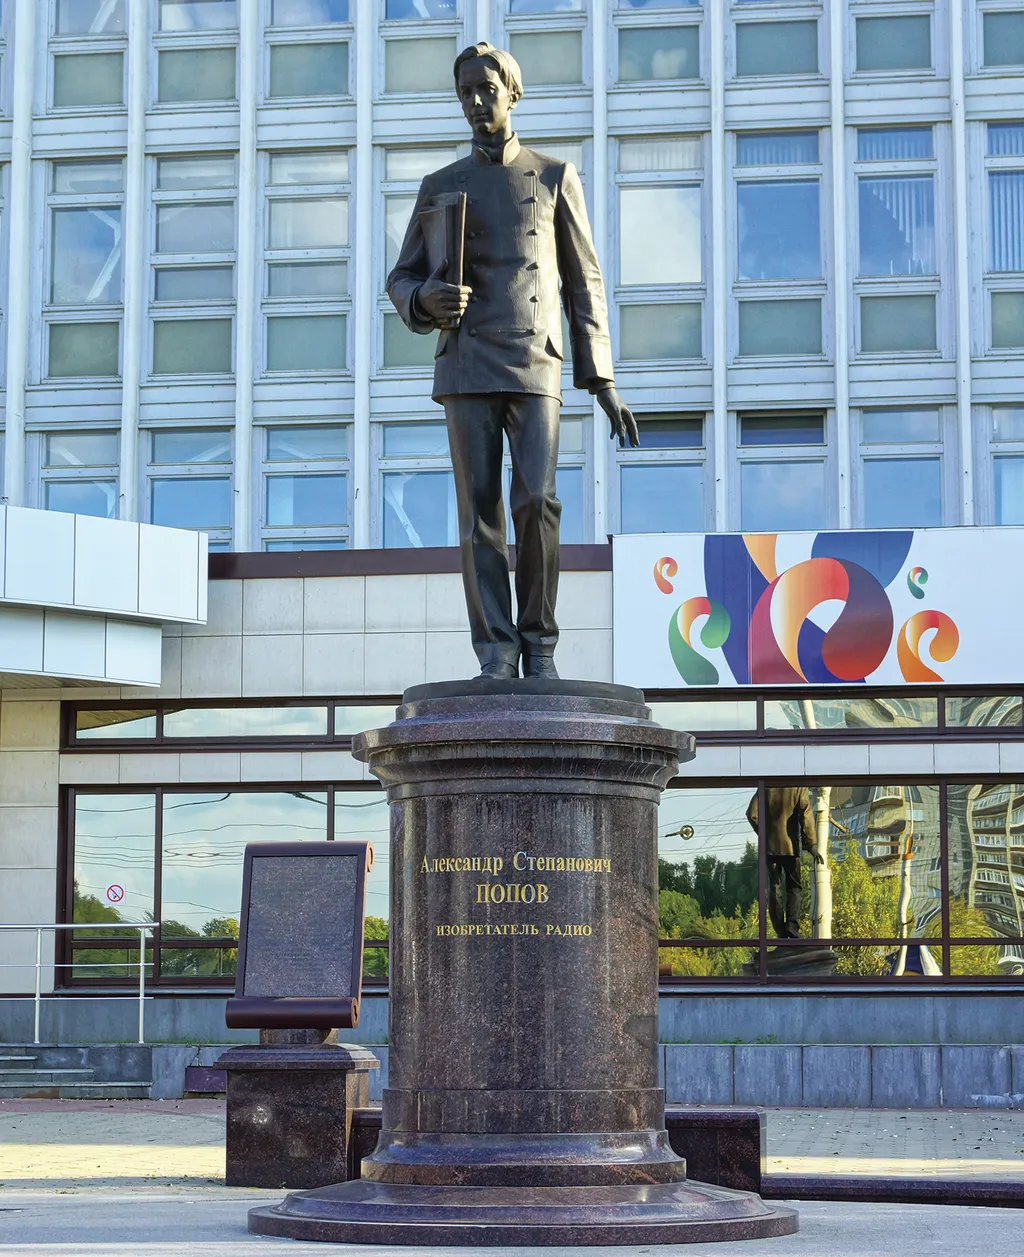 Памятник изобретателю радио А.С. Попову. Автор А. Матвеев / The Monument to the founder of radio A.S. Popov